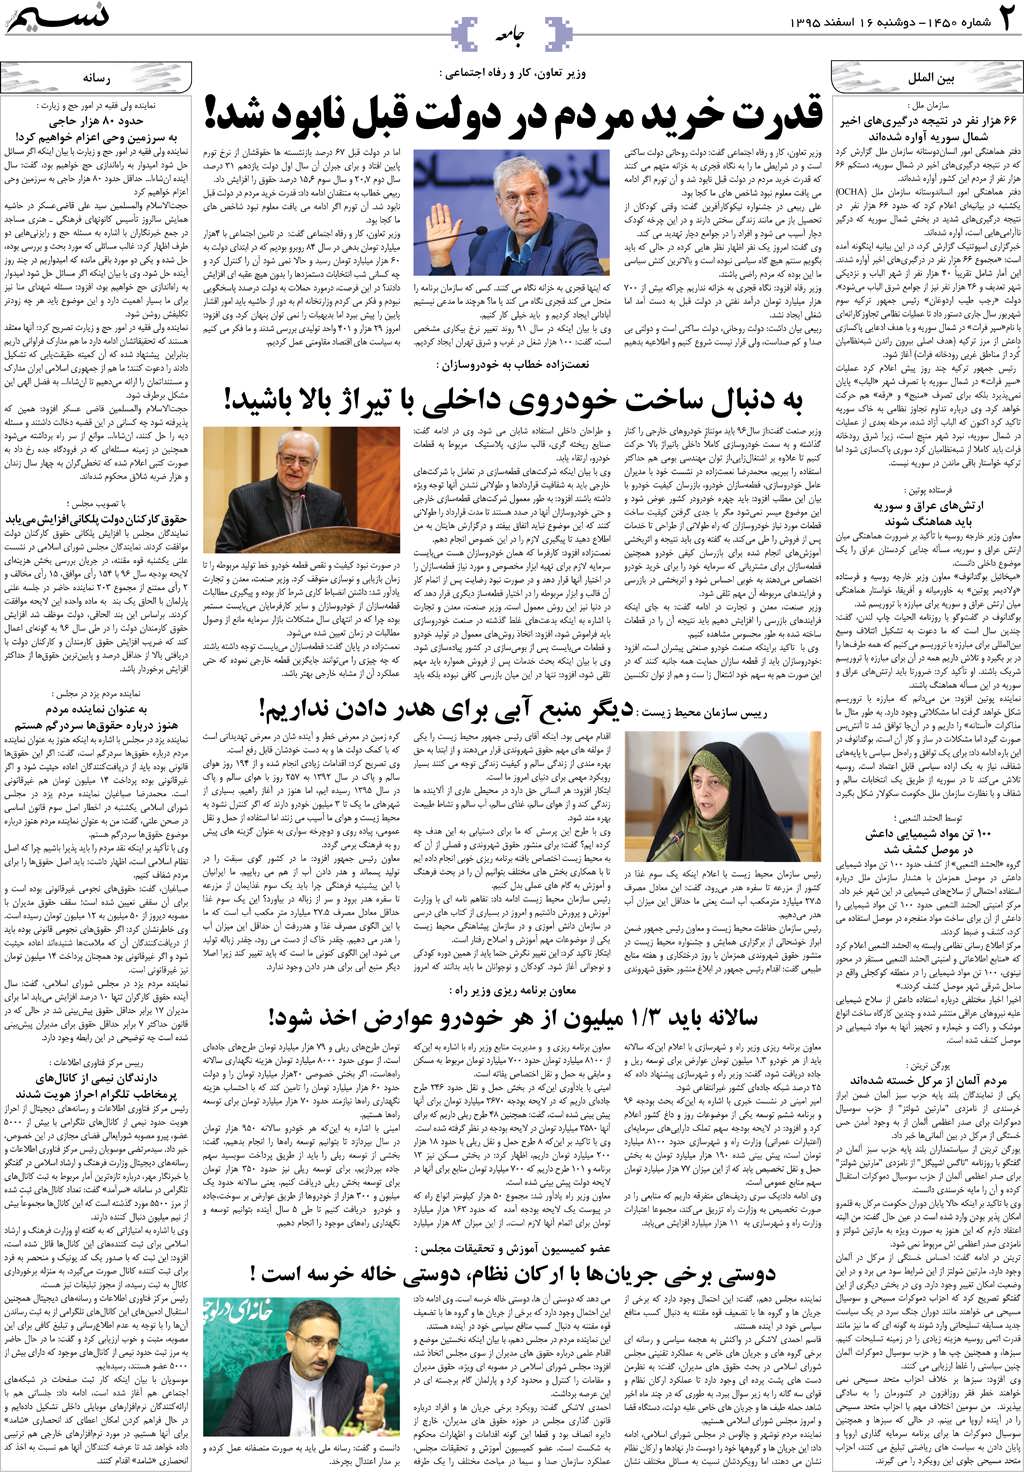 صفحه جامعه روزنامه نسیم شماره 1450